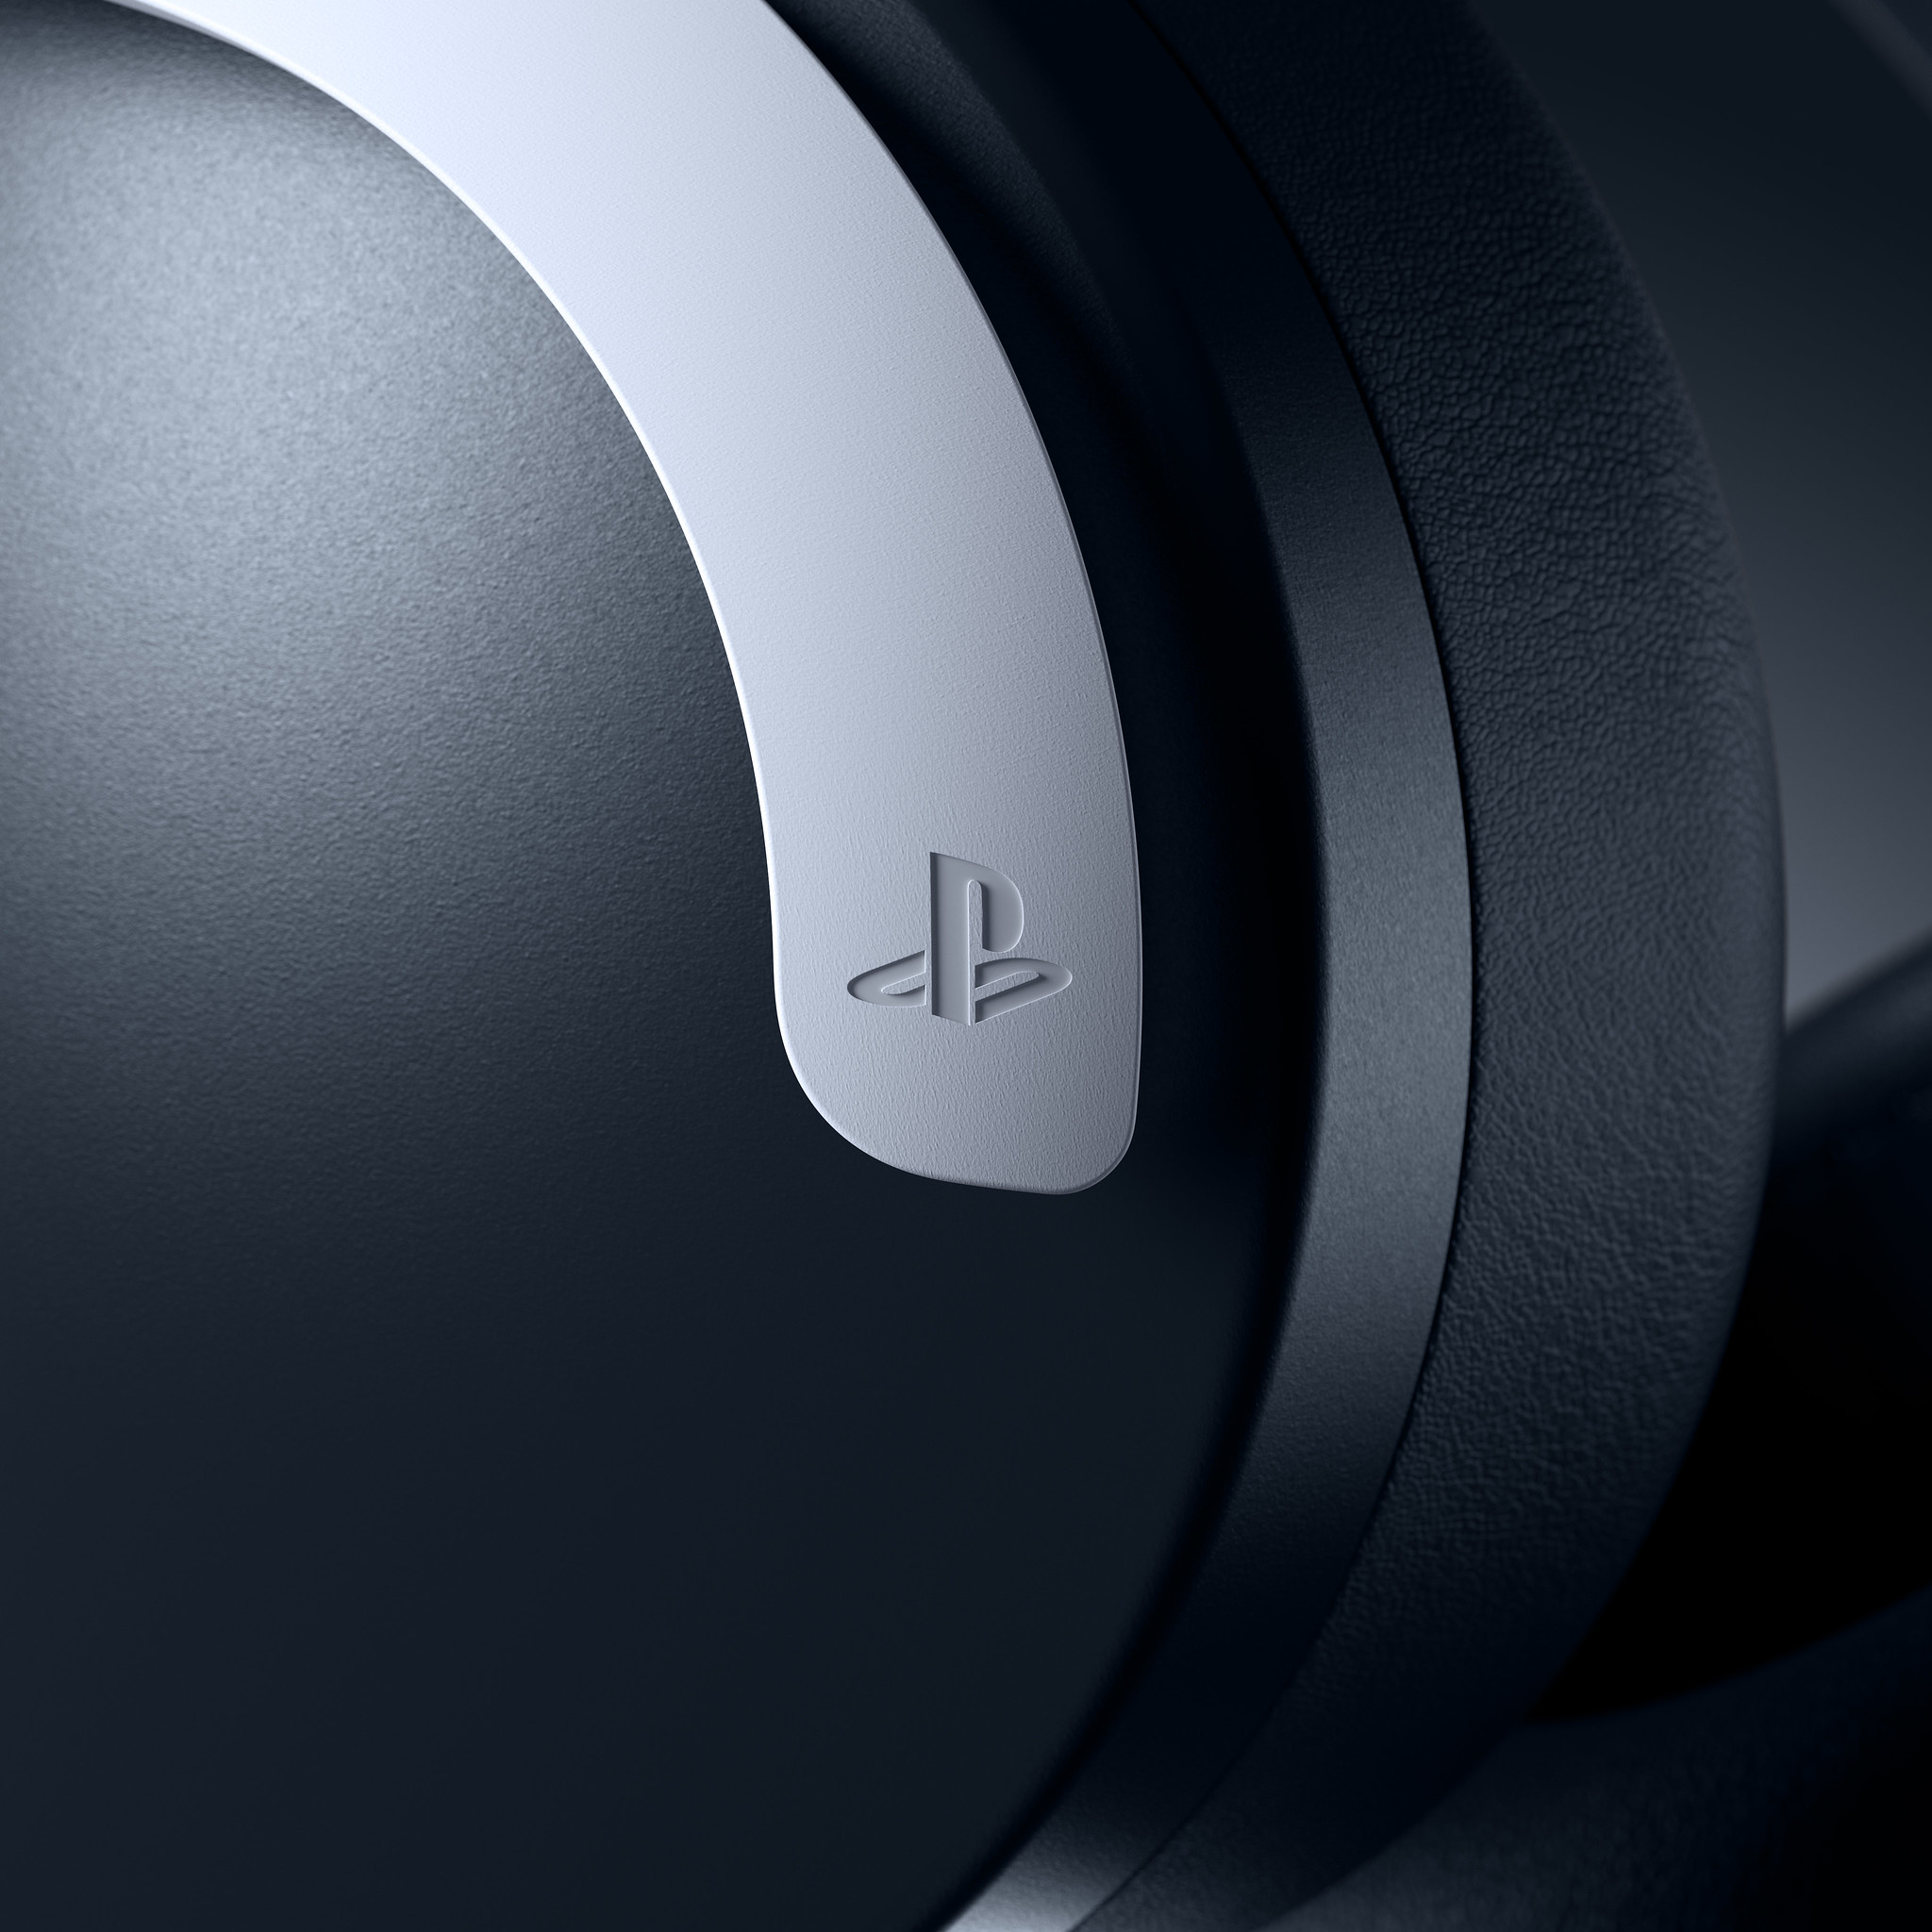 PS5 и аксессуары к консоли во всей красе на фотографиях Sony